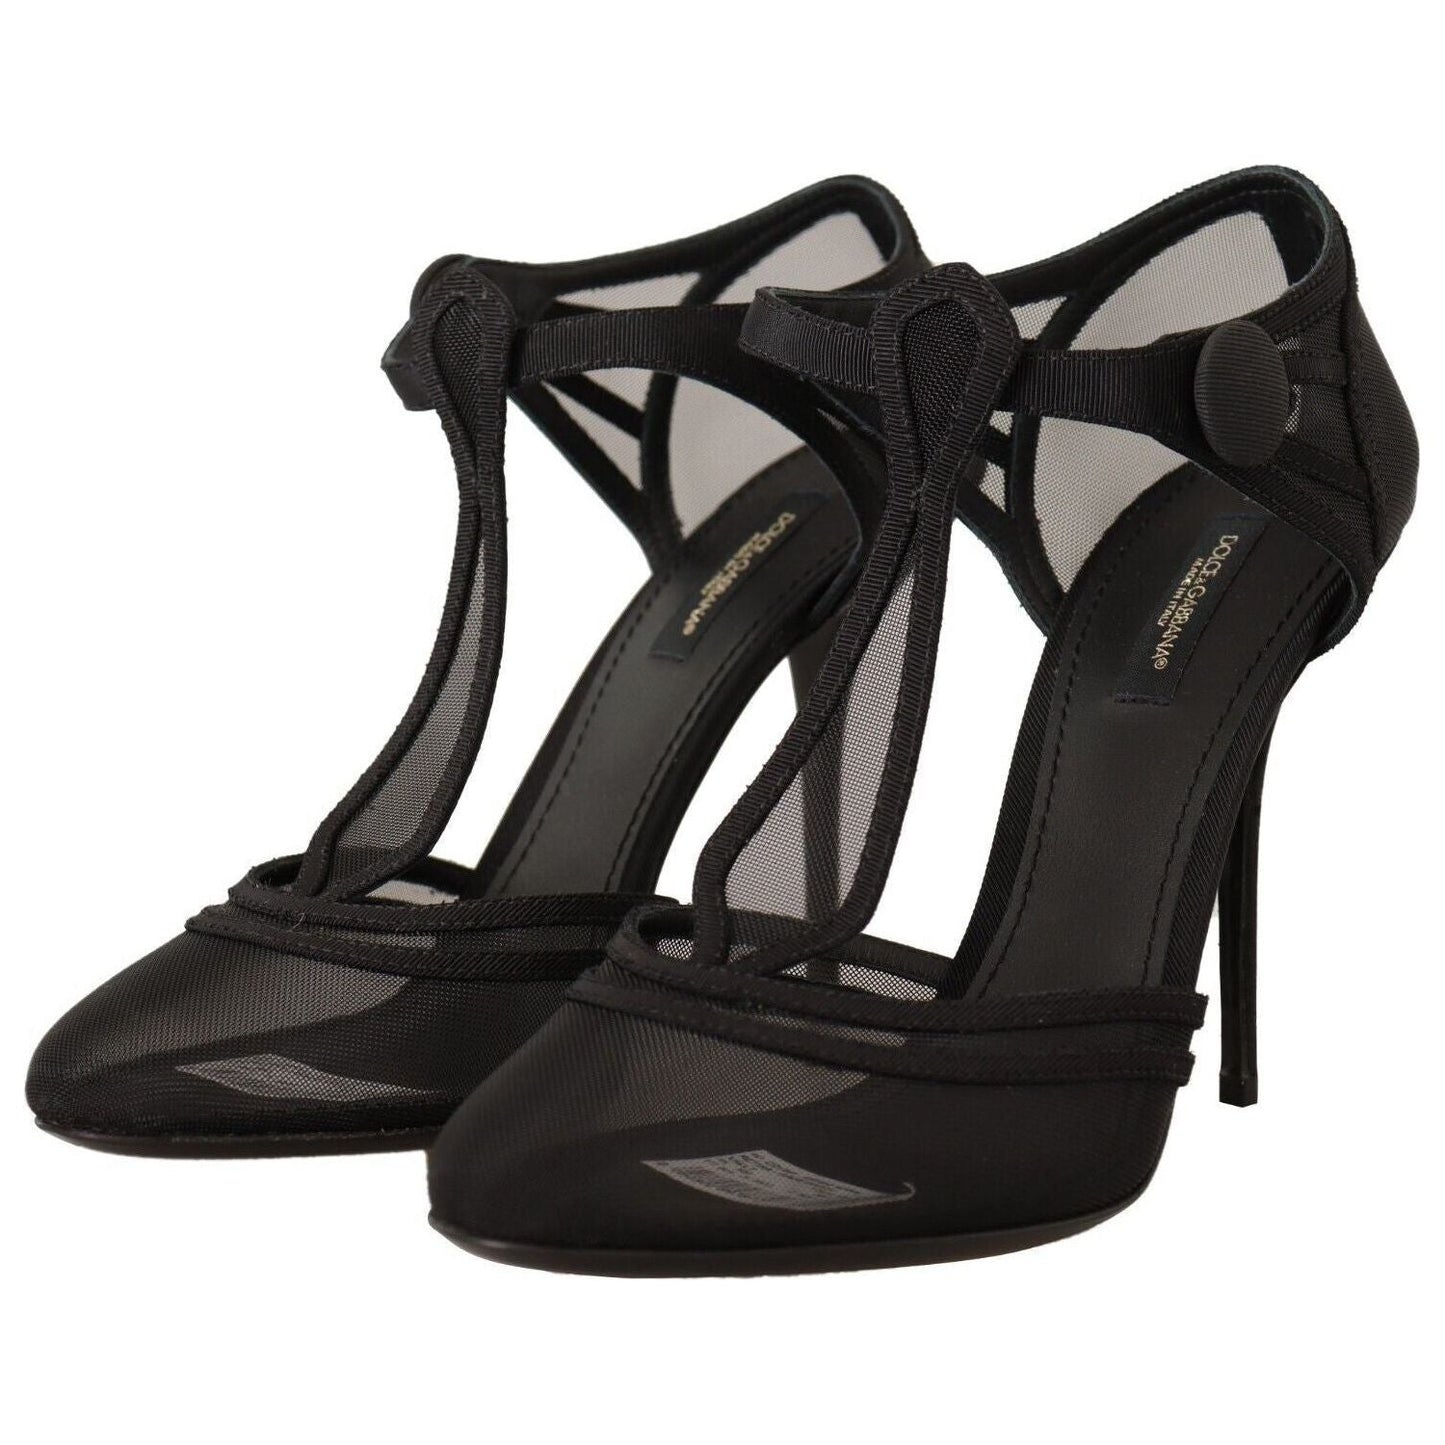 Dolce & Gabbana Elegant Mesh T-Strap Stiletto Pumps black-mesh-t-strap-stiletto-heels-pumps-shoes s-l1600-2-205-75d2490a-f69.jpg